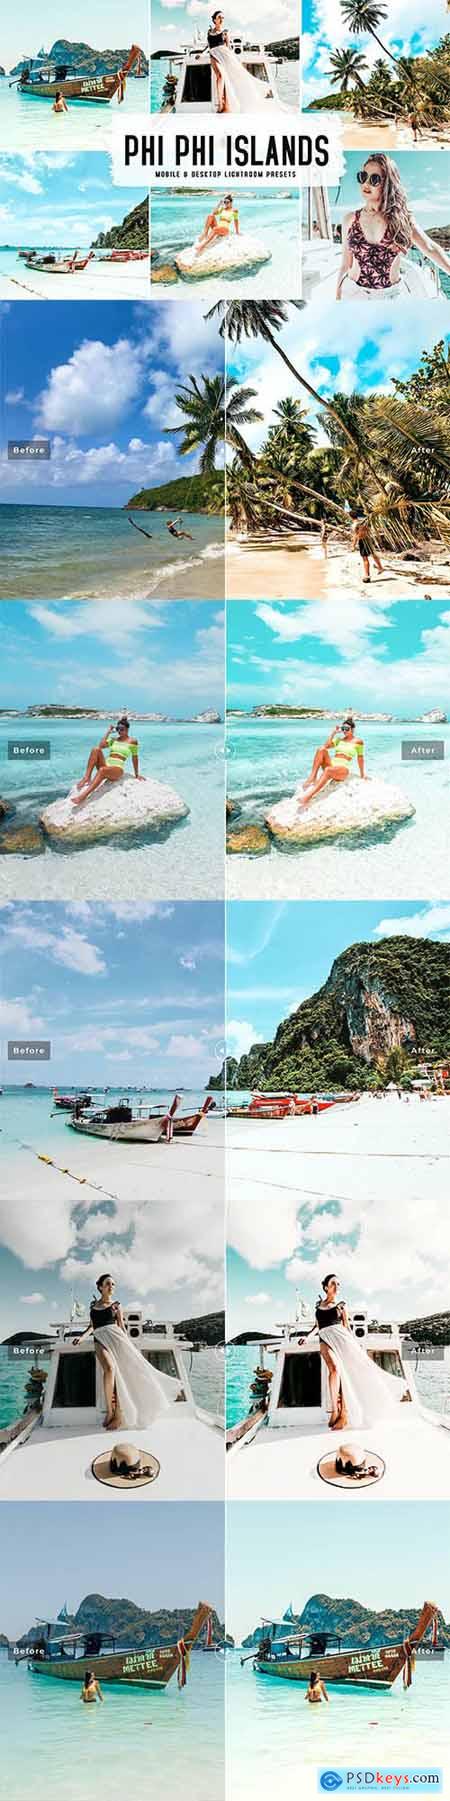 Phi Phi Islands Mobile & Desktop Lightroom Presets